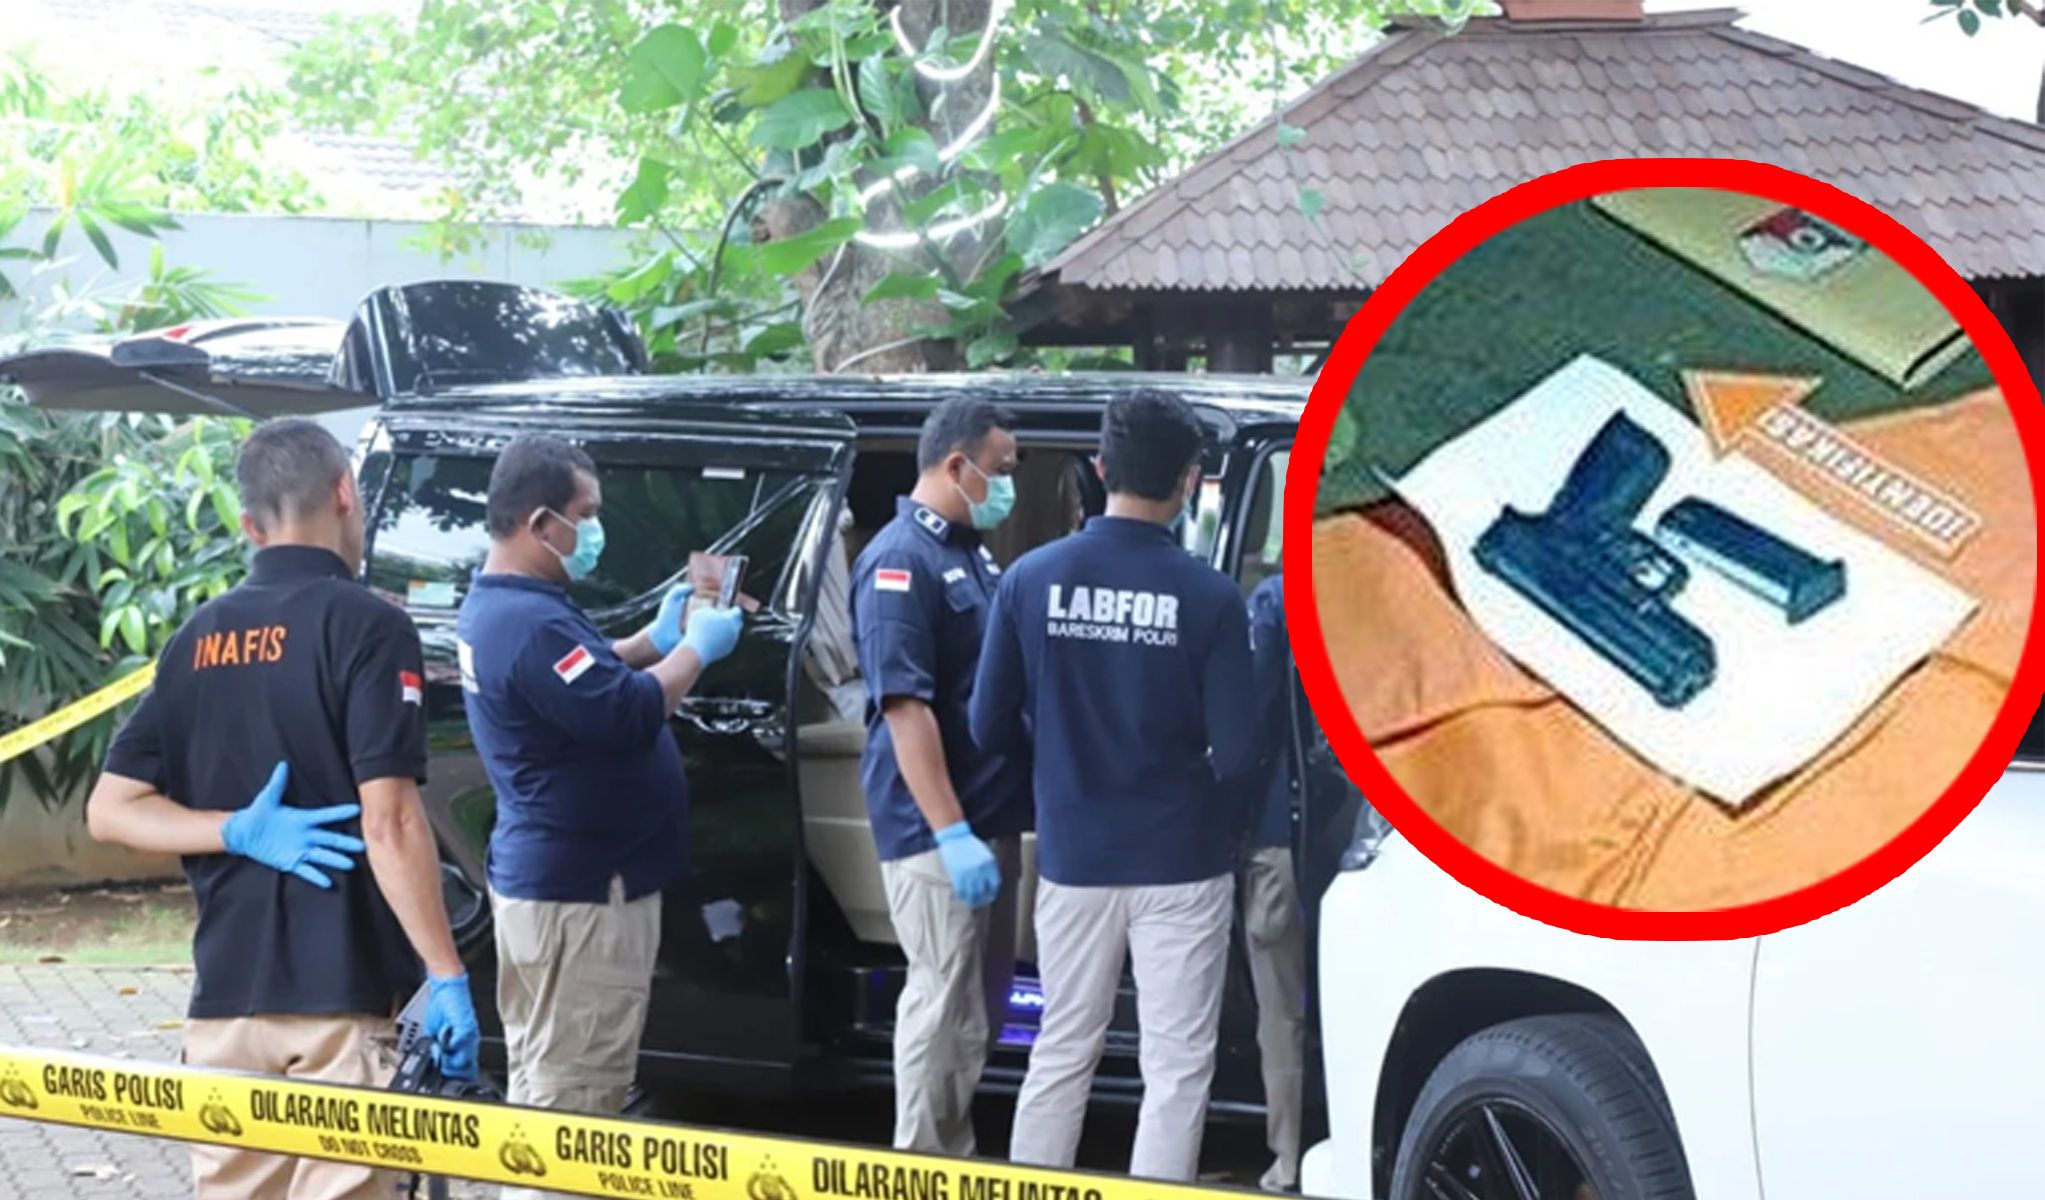 Ditemukan Pistol HS-9 Tak Jauh dari Anggota Poisi Manado Tewas, Kematian Brigadir Ridhal Ali Tomi Terekam Kamera CCTV